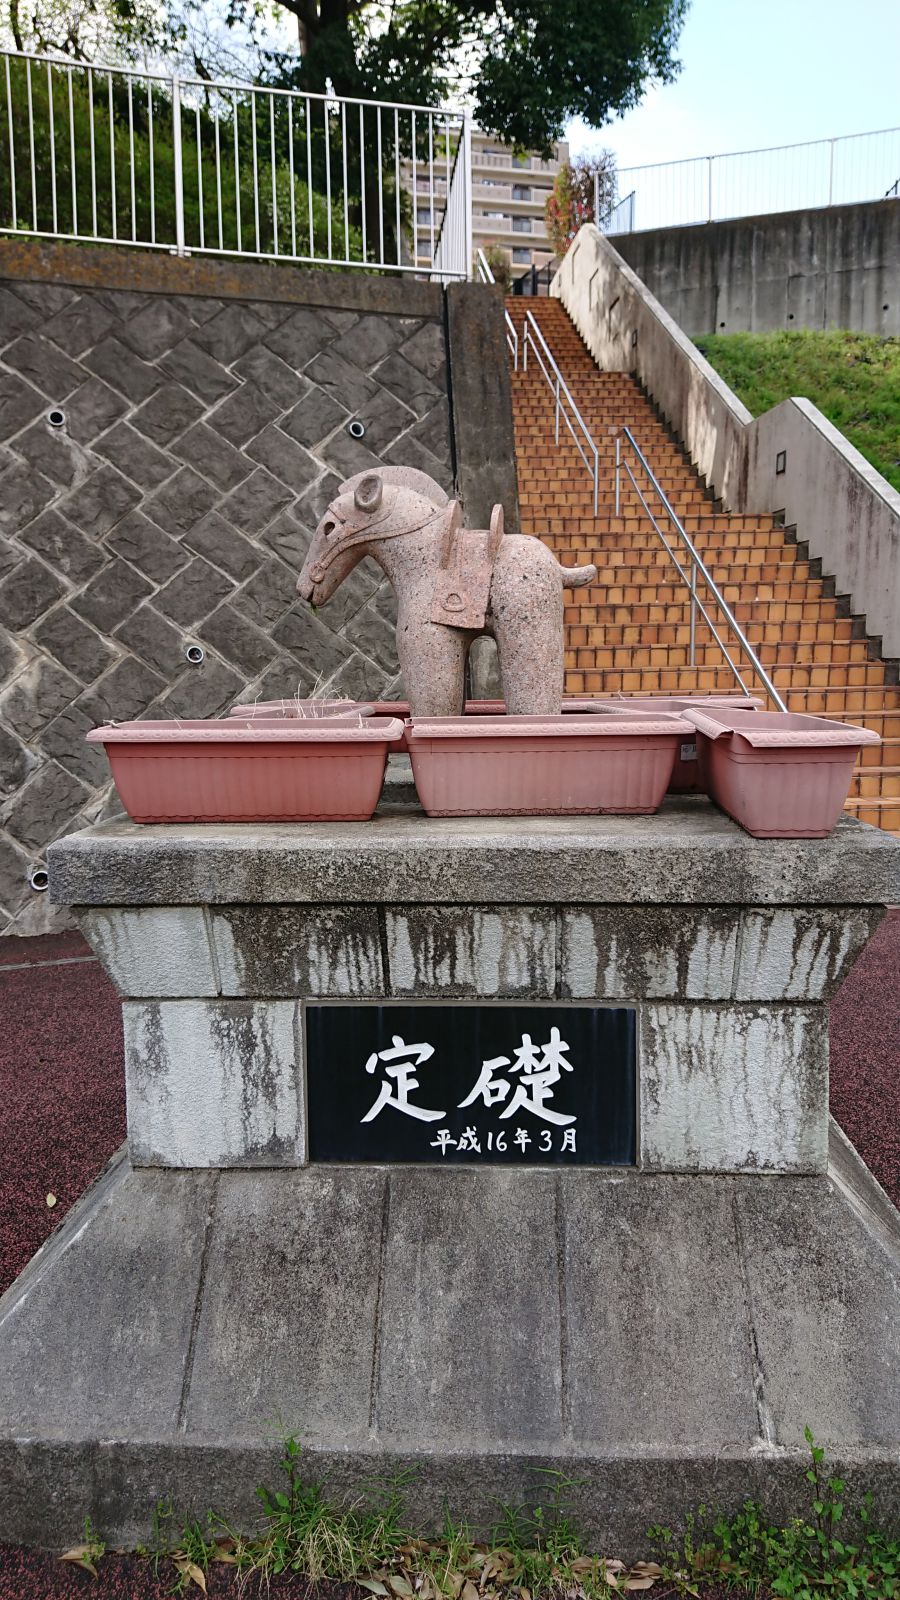 東側駐車場にある馬型埴輪の像